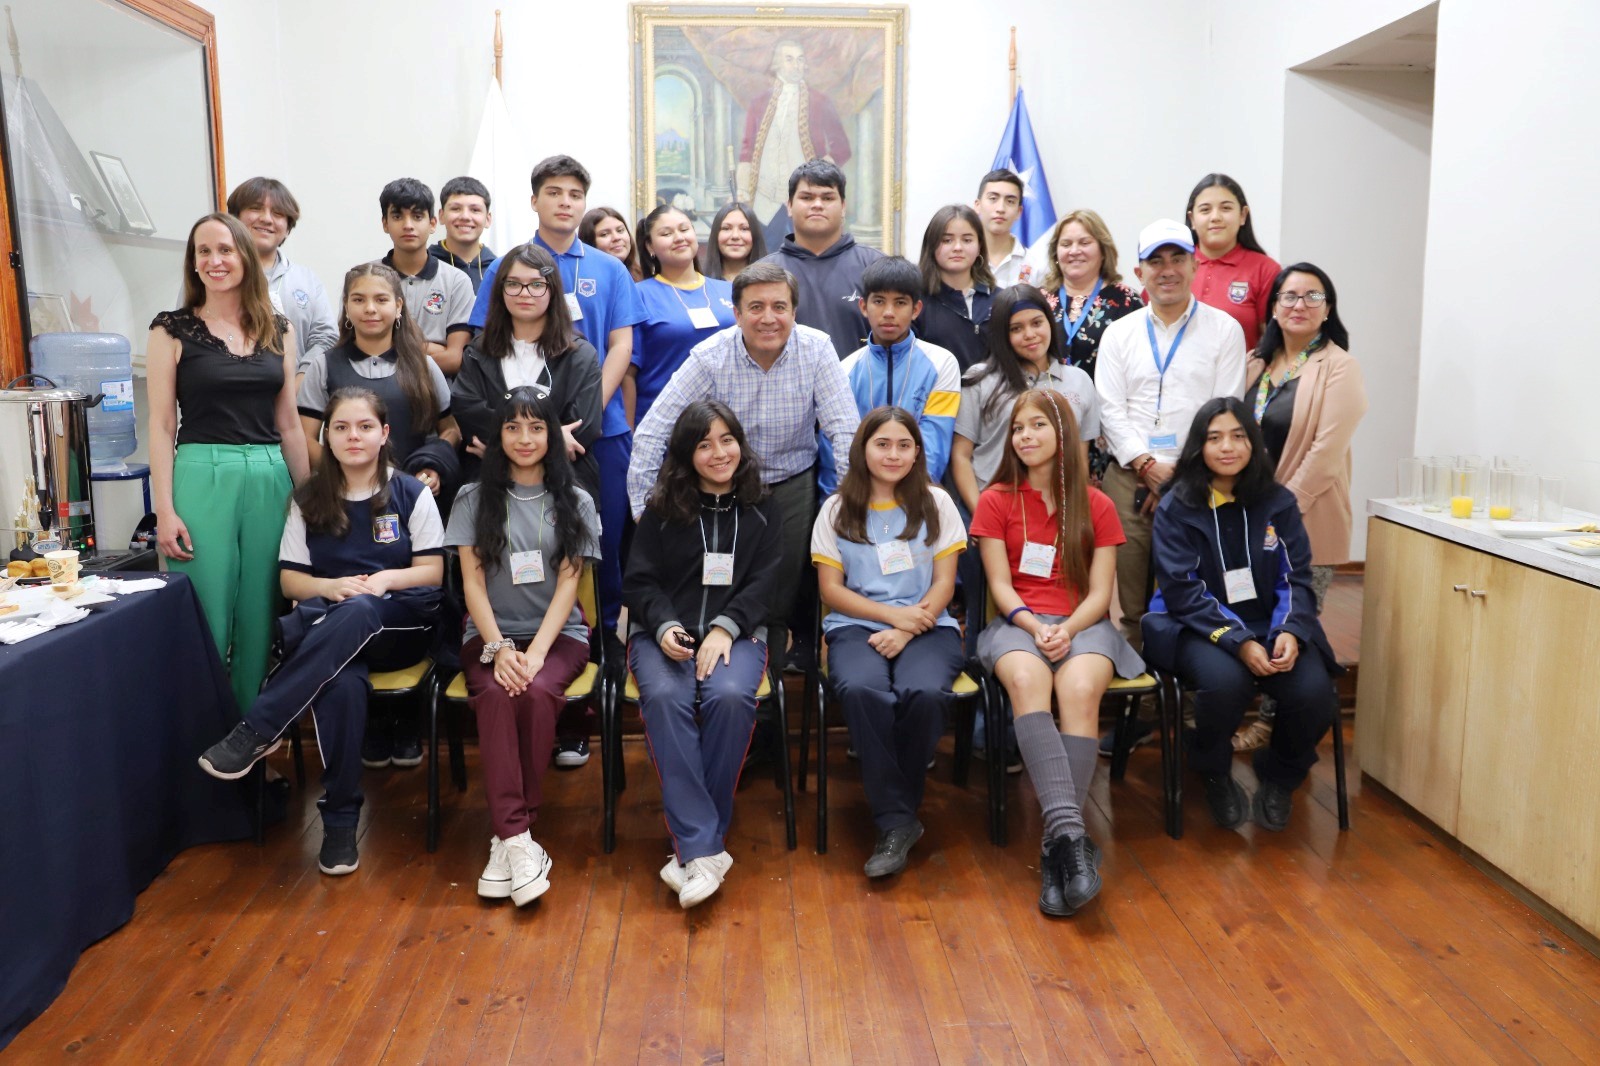 LOS ANDES: Alcalde de Los Andes se reunió con niños, niñas y jóvenes para conocer sus inquietudes